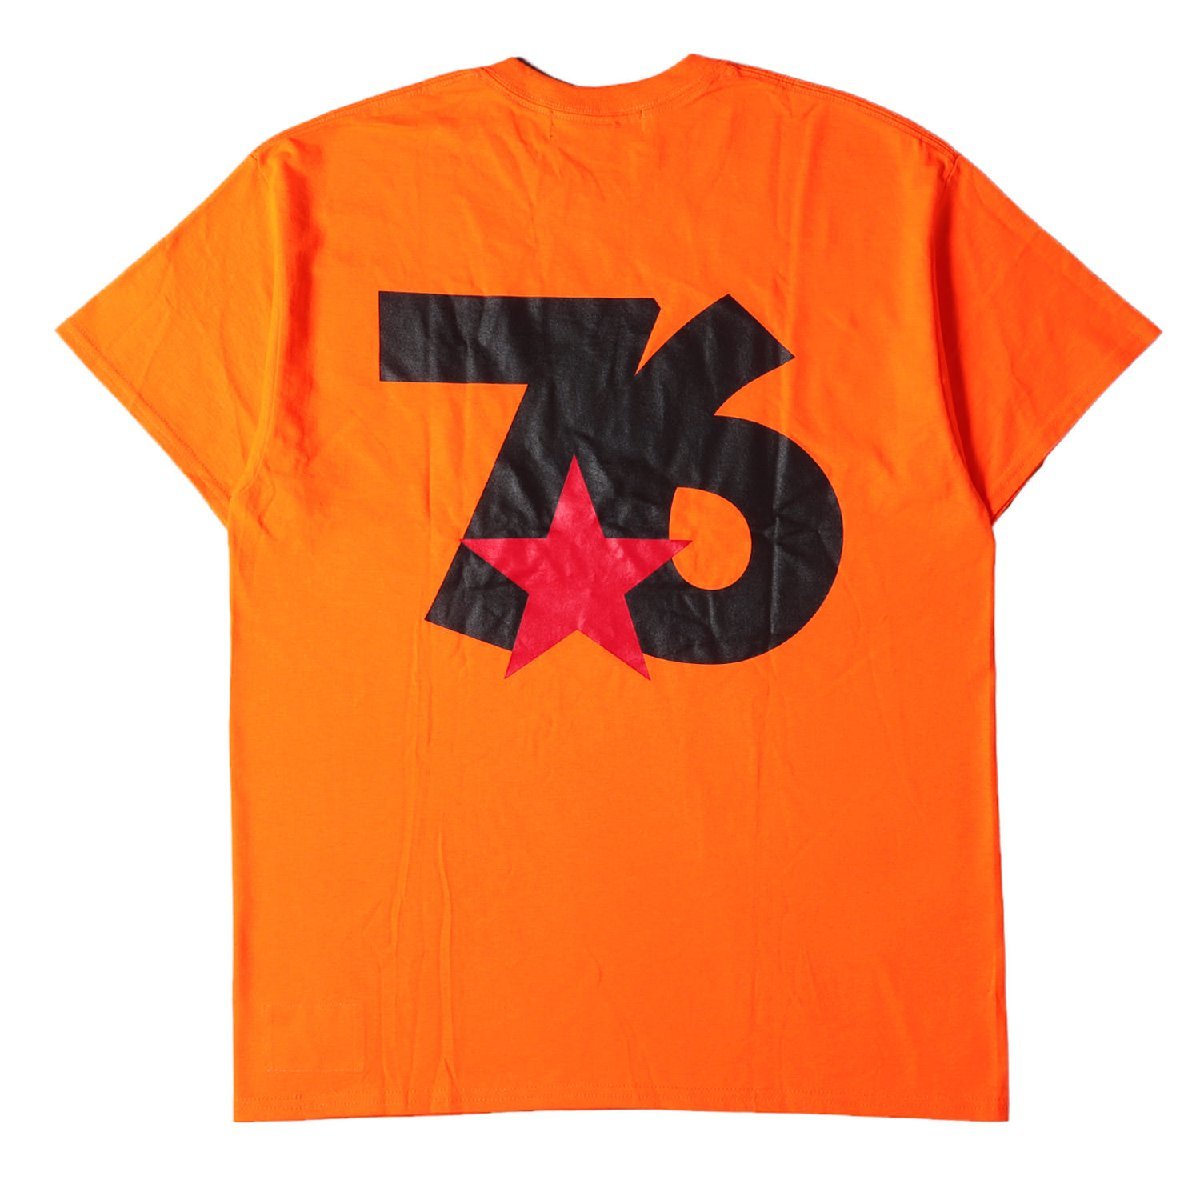 WHIZLIMITED ウィズ リミテッド Tシャツ サイズ:記載なし(XL位) バック 76ロゴ クルーネック 半袖 Tシャツ オレンジ トップス カットソー